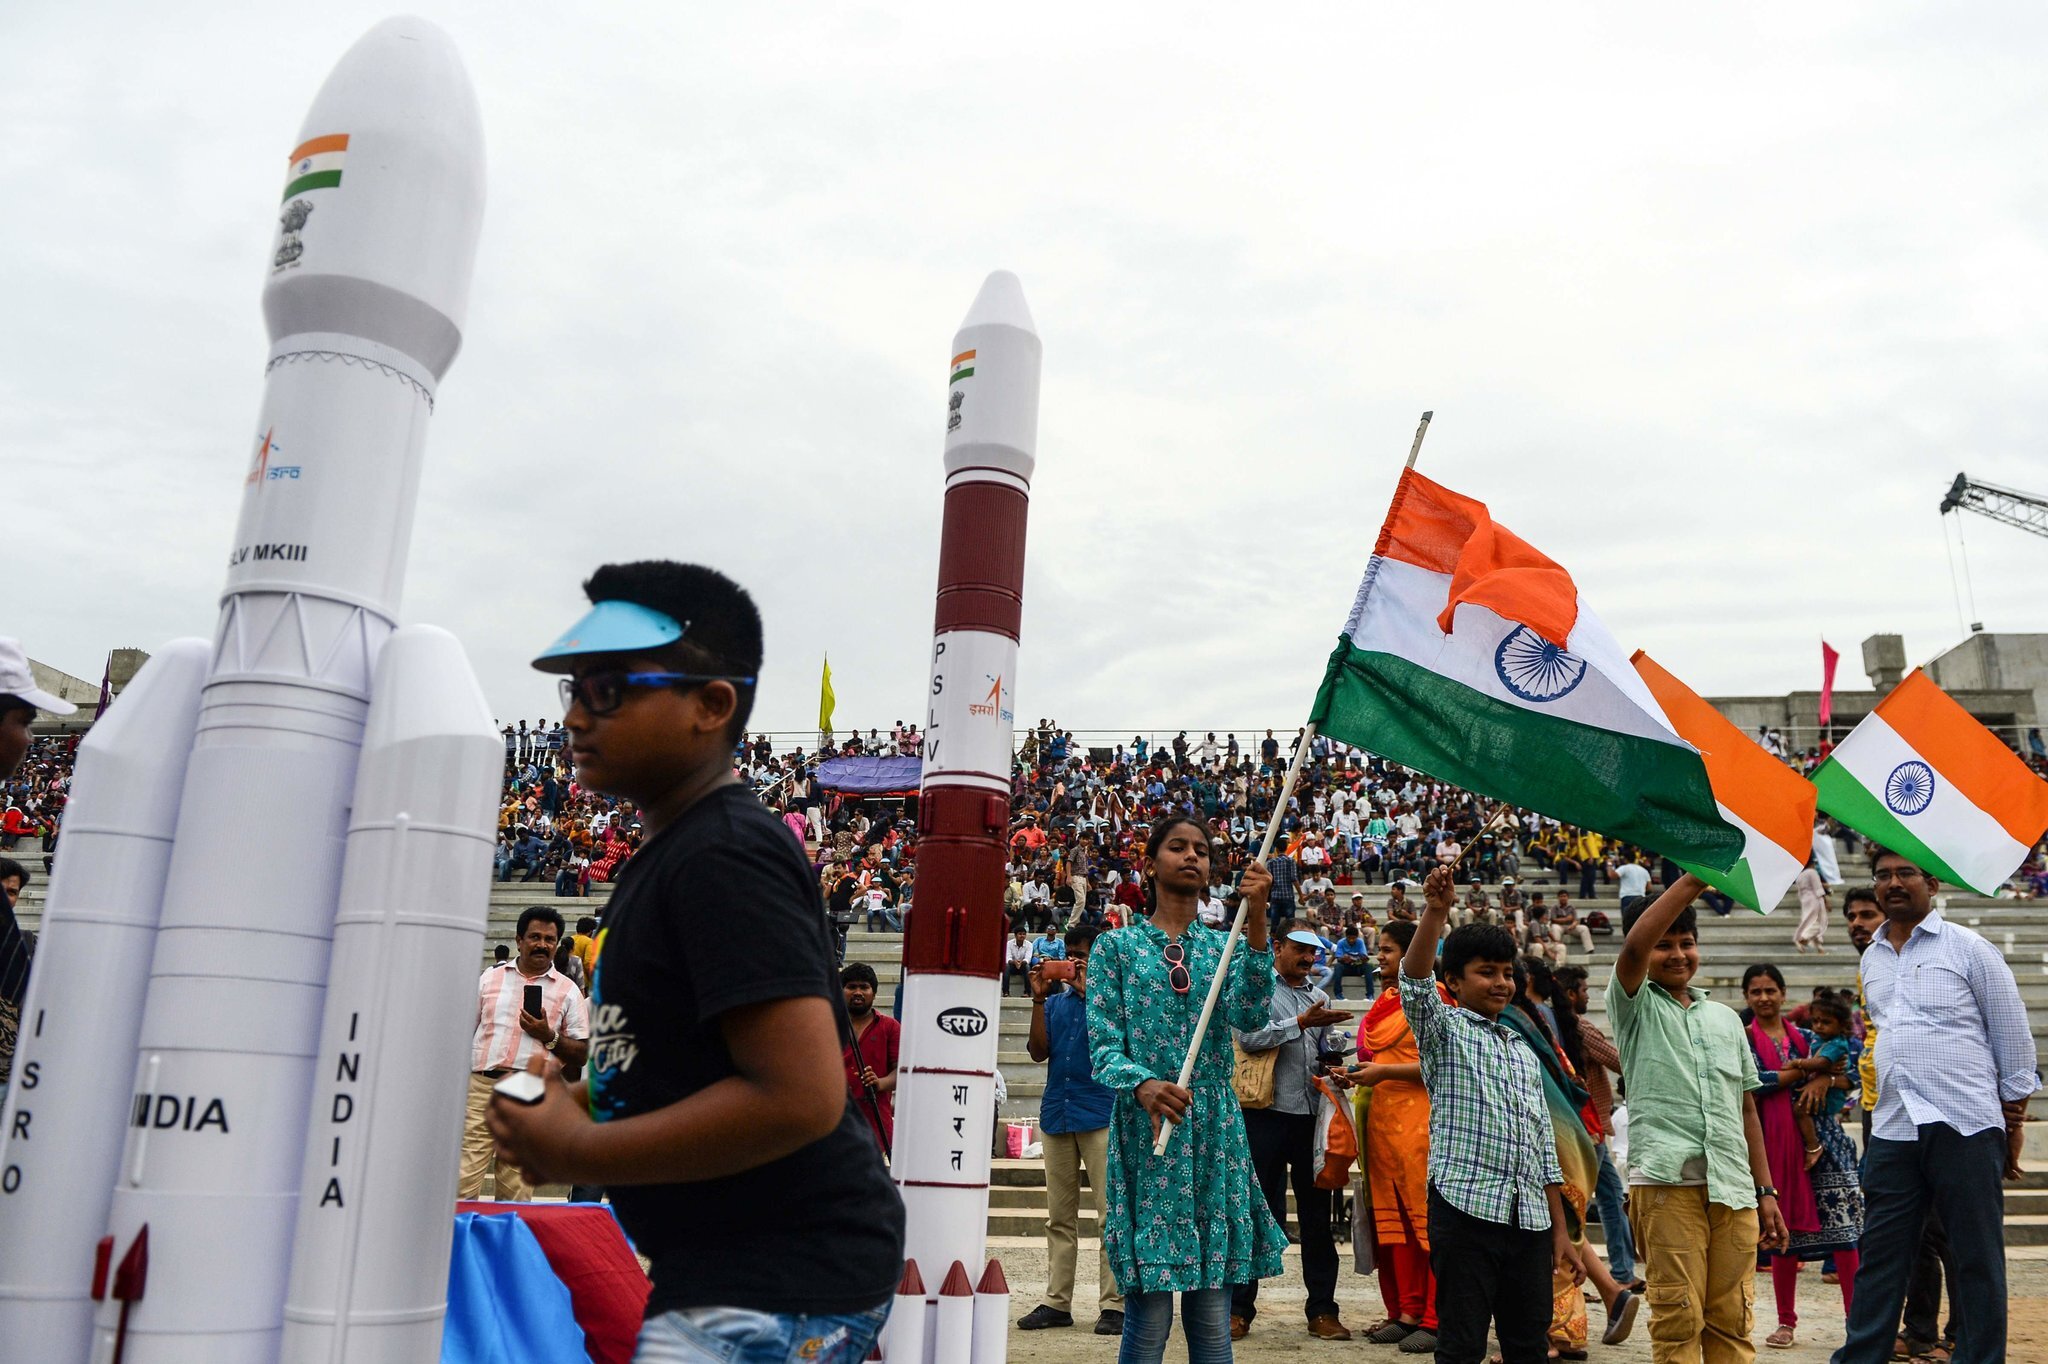 У Индии есть космическая программа. И они все еще планируют попасть на Луну